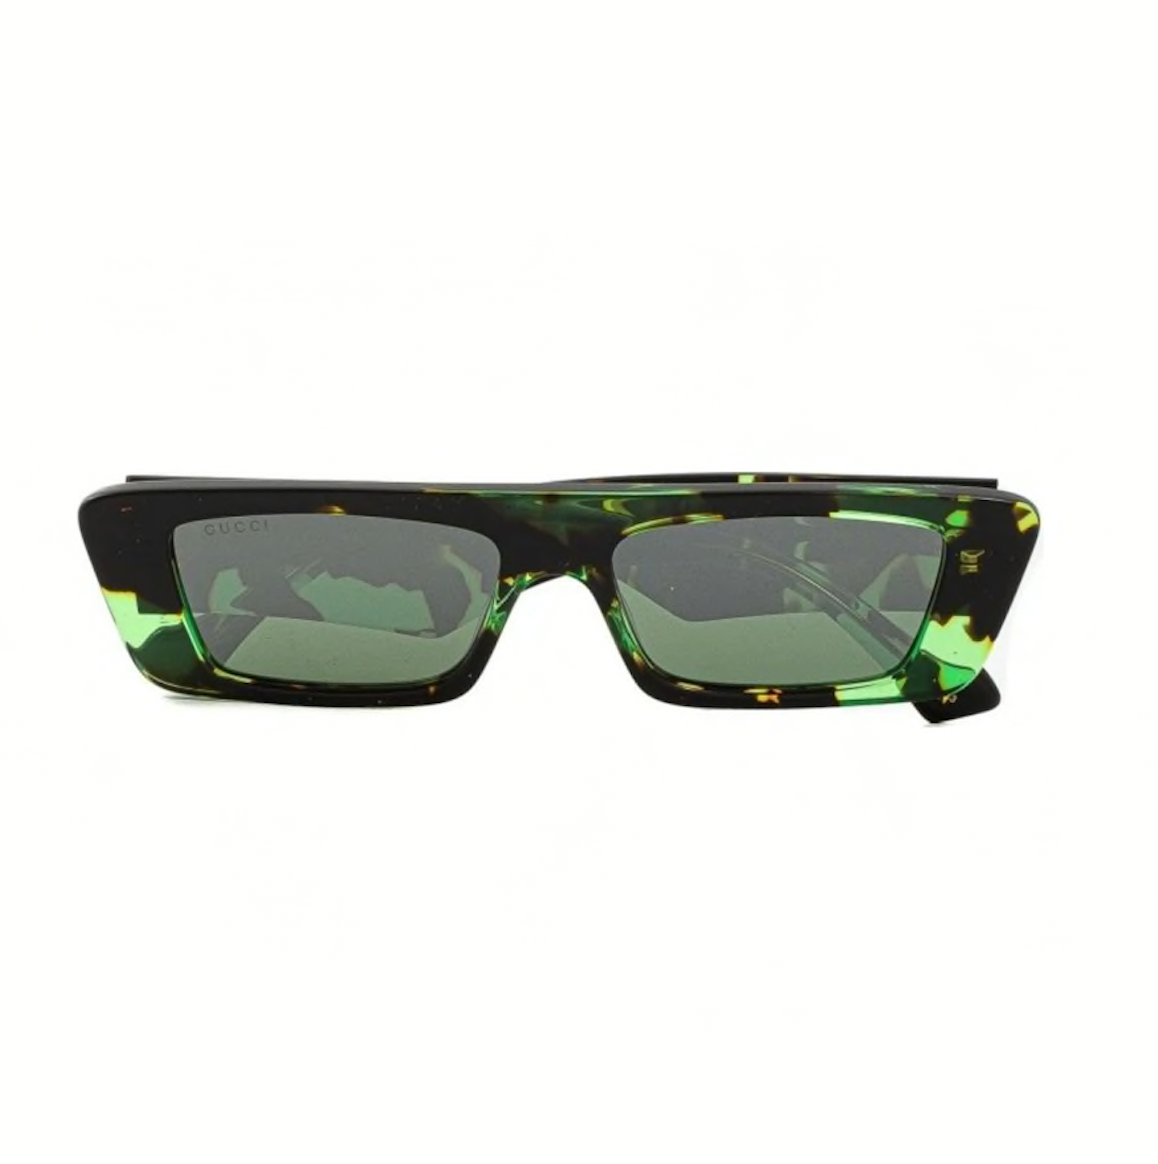 Gucci GG1331S-008 54mm New Sunglasses